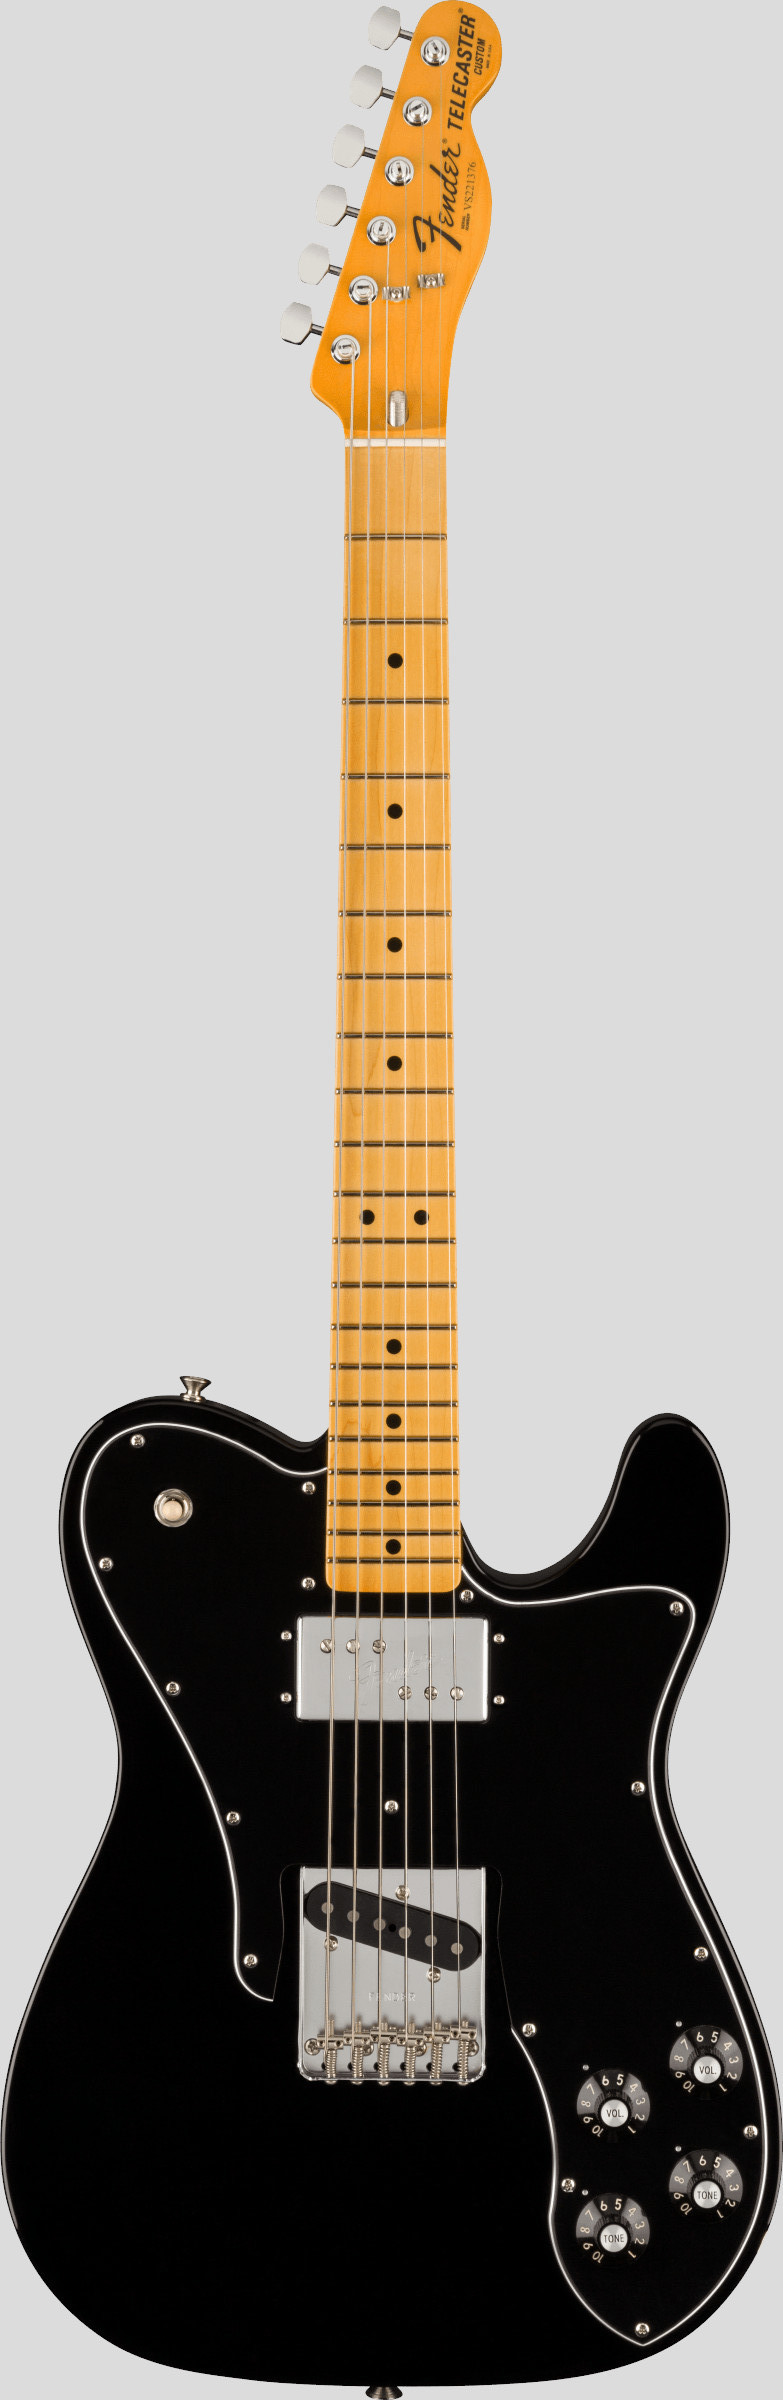 Fender American Vintage II 1977 Telecaster Custom Black 1